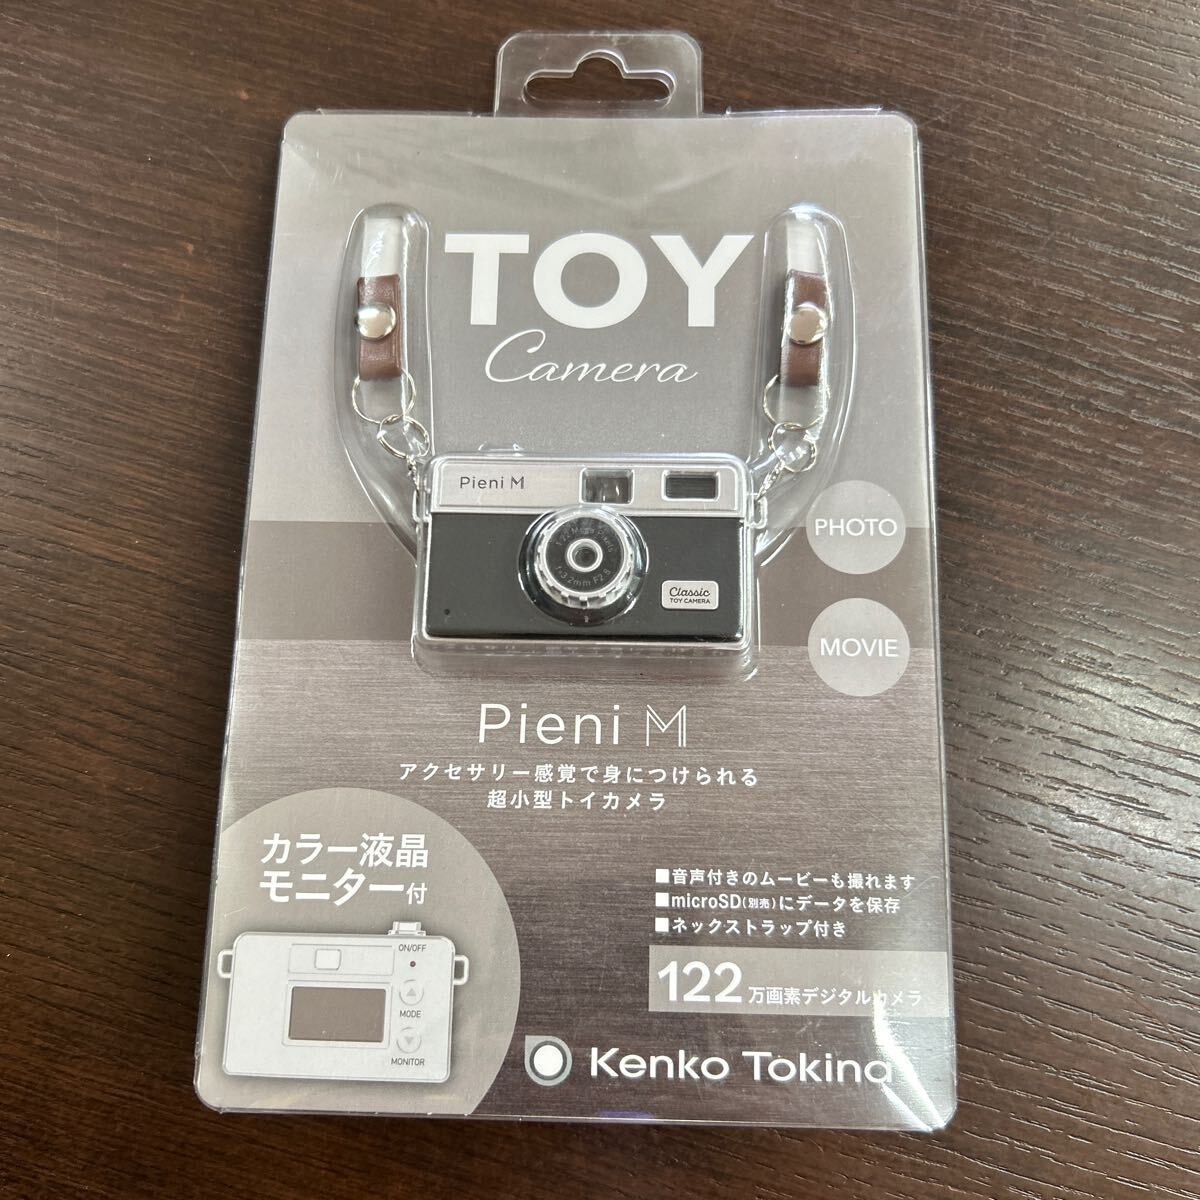 【未開封品】Kenko Tokina TOY camera PieniM ピエニ M 122万画素 デジタルカメラ 超小型トイカメラ の画像1